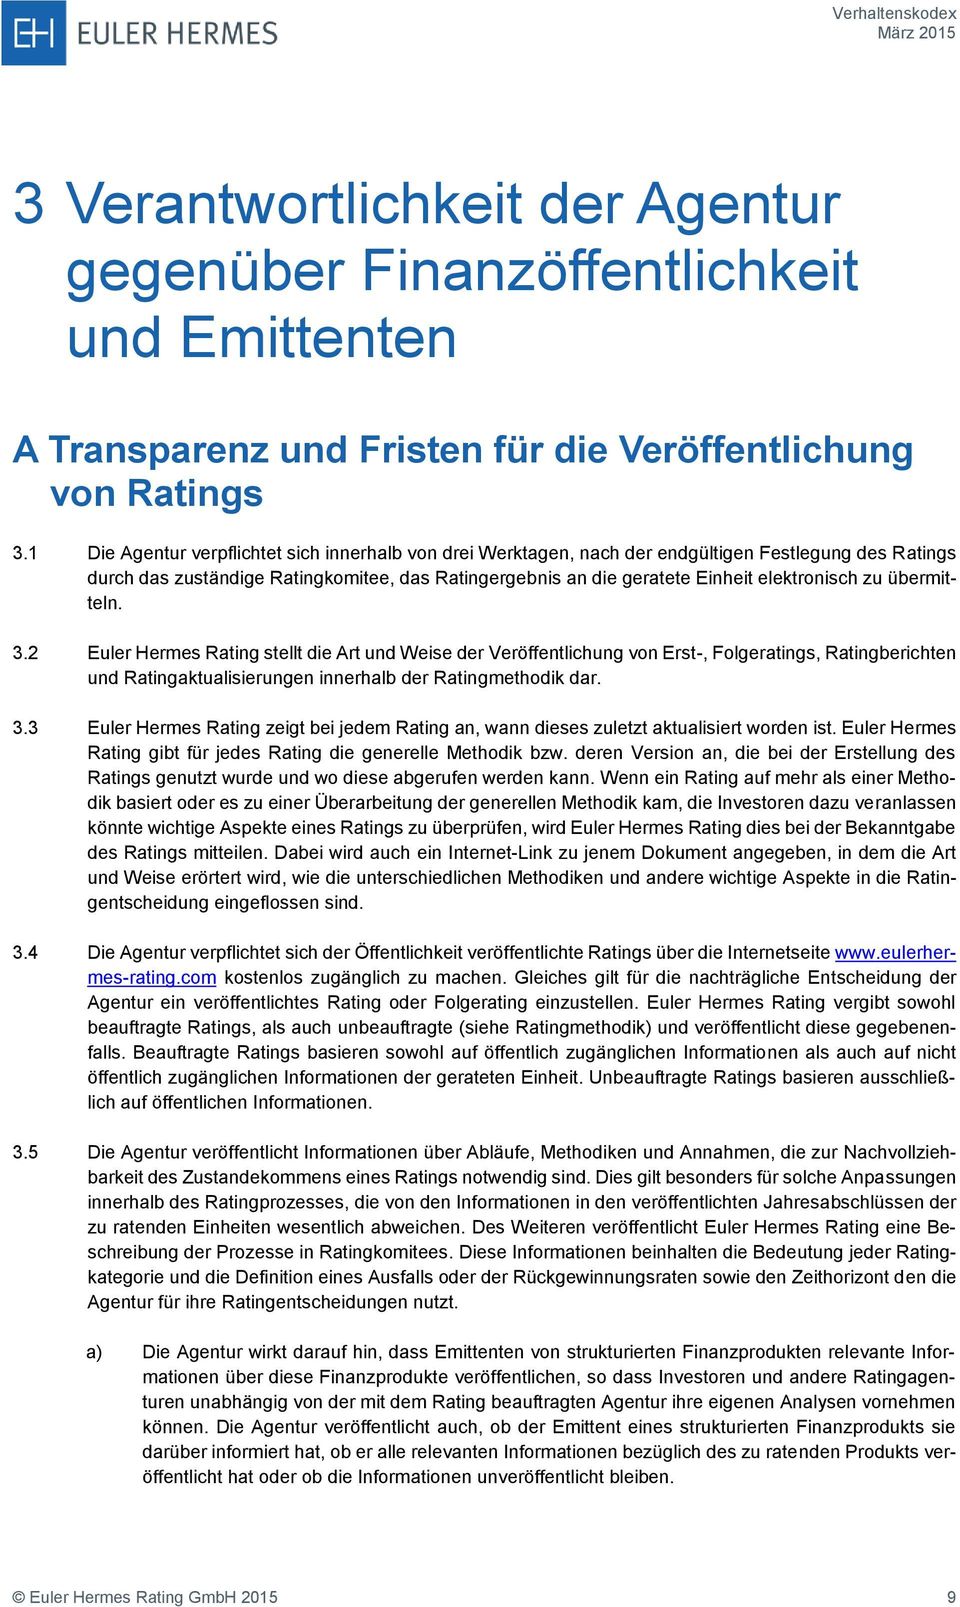 zu übermitteln. 3.2 Euler Hermes Rating stellt die Art und Weise der Veröffentlichung von Erst-, Folgeratings, Ratingberichten und Ratingaktualisierungen innerhalb der Ratingmethodik dar. 3.3 Euler Hermes Rating zeigt bei jedem Rating an, wann dieses zuletzt aktualisiert worden ist.